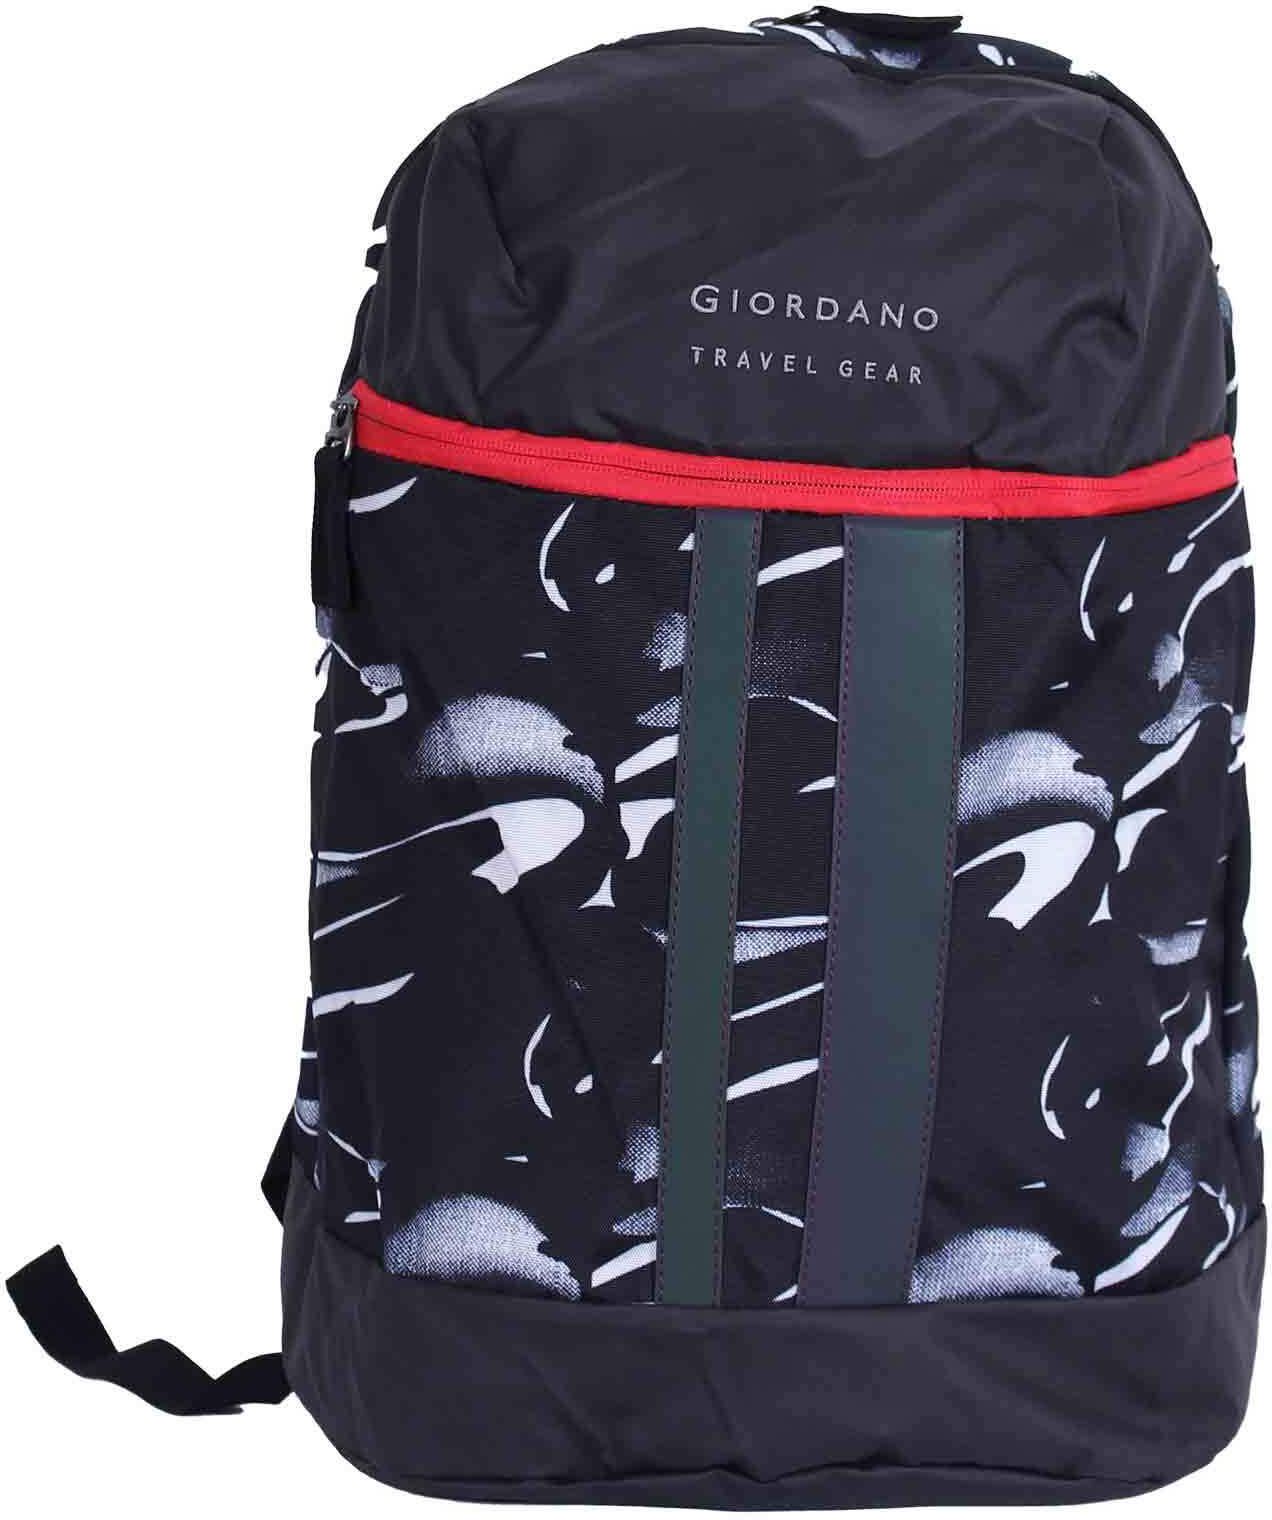 Giordano backpack10